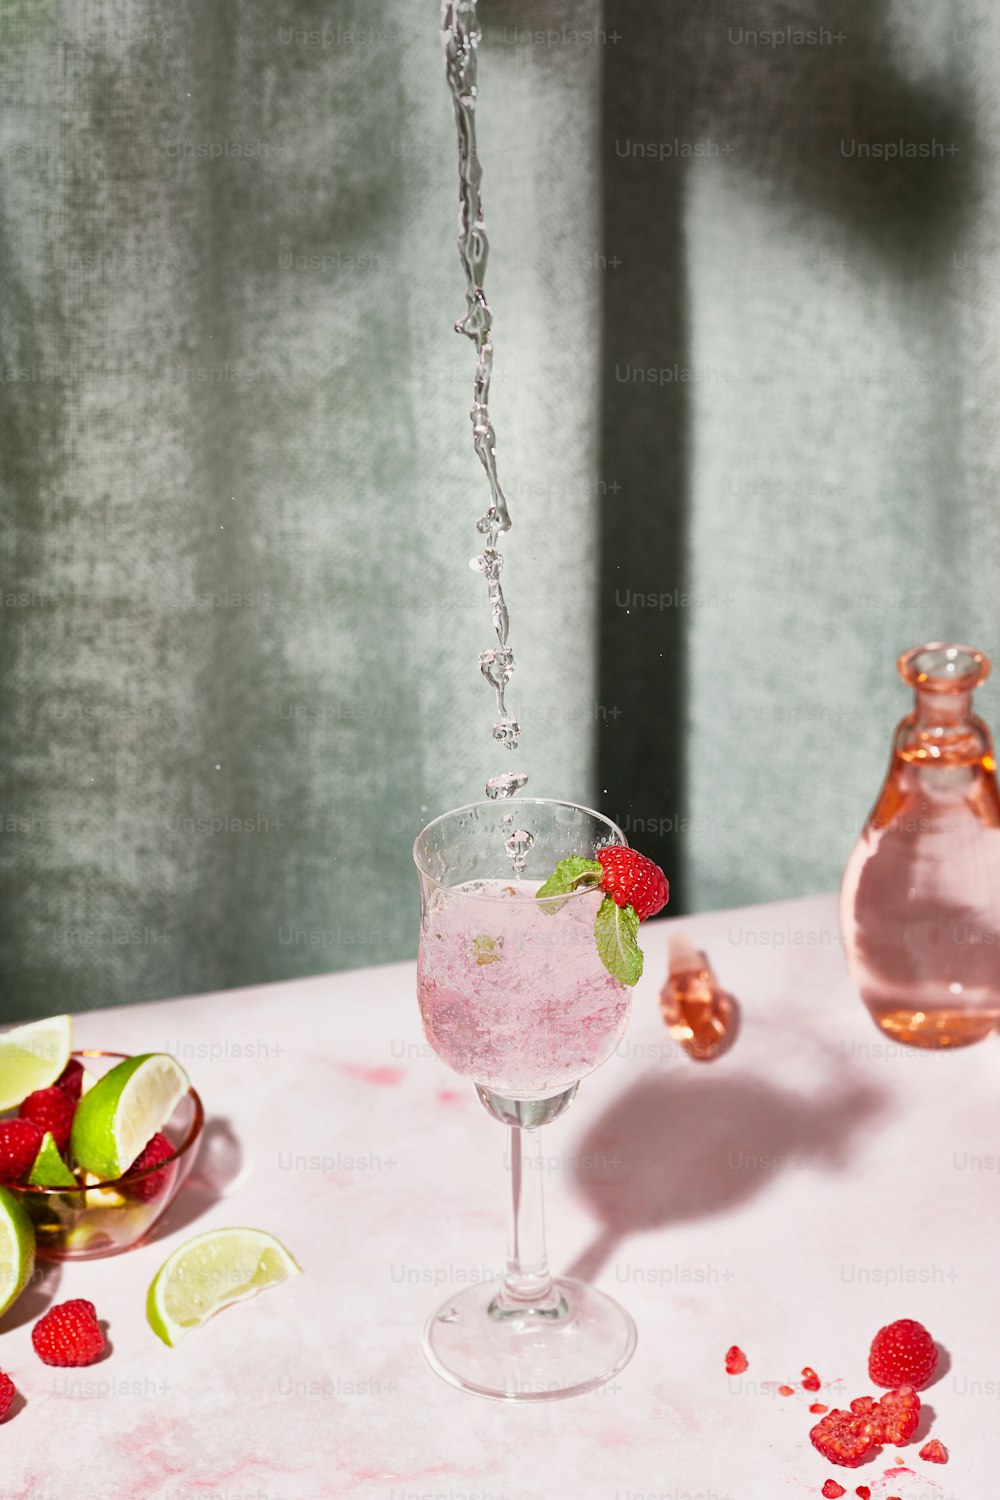 un vaso de agua con fresas y limas sobre una mesa